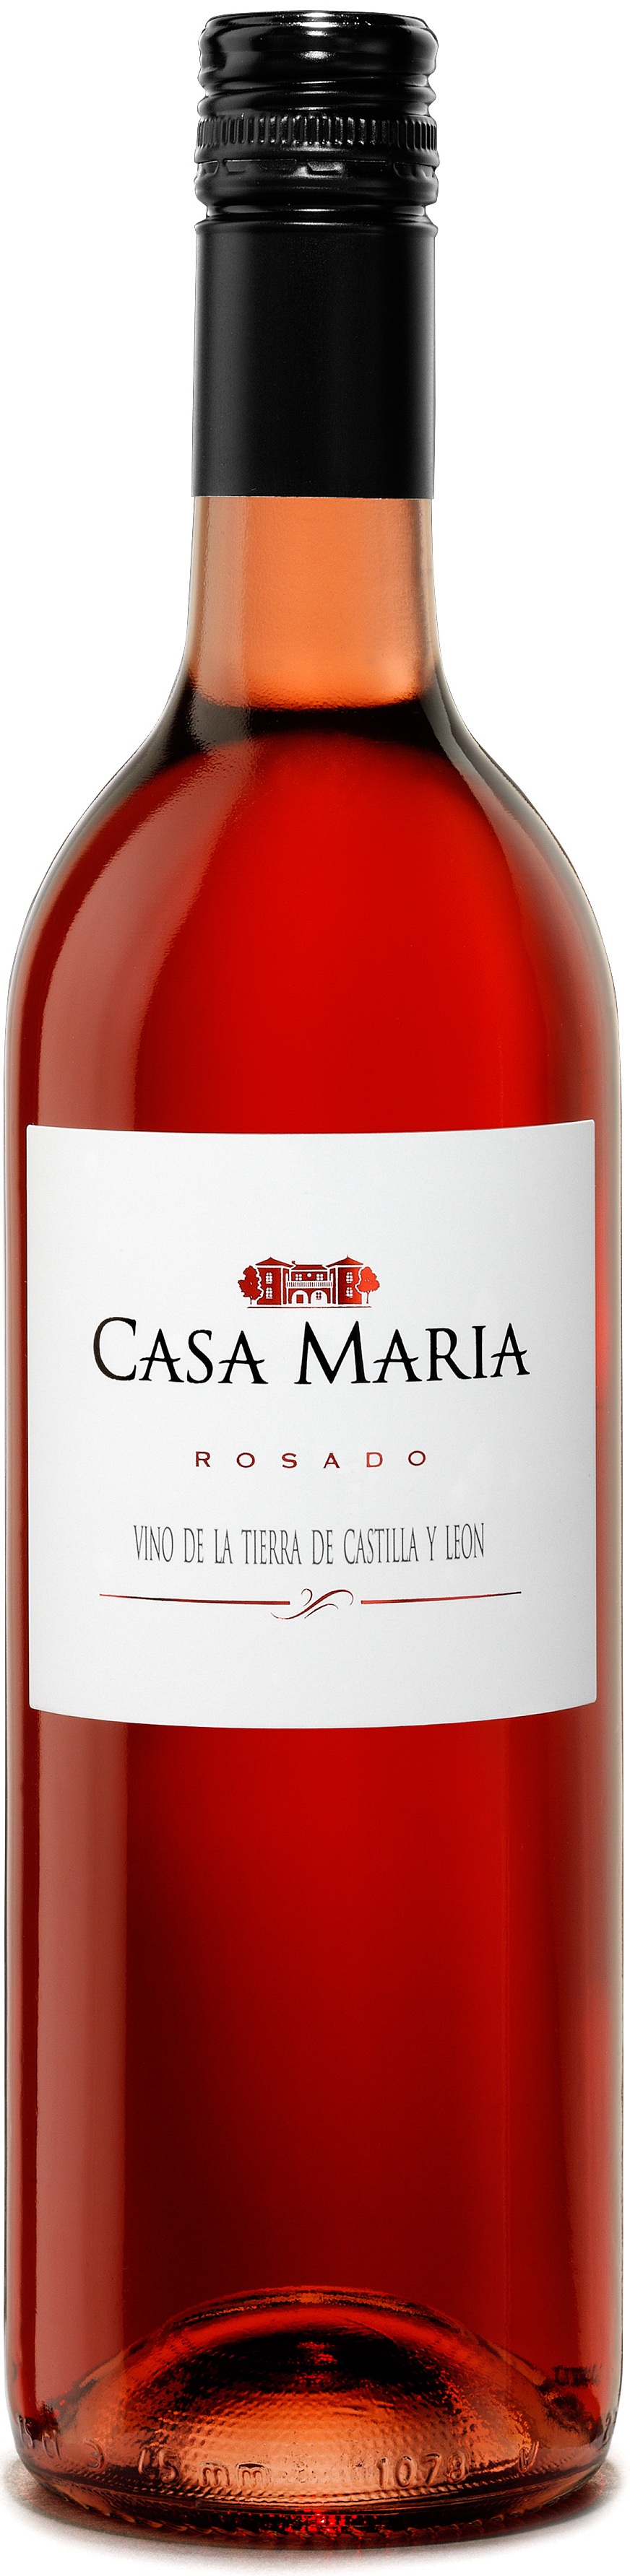 Imagen de la botella de Vino Casa María Rosado